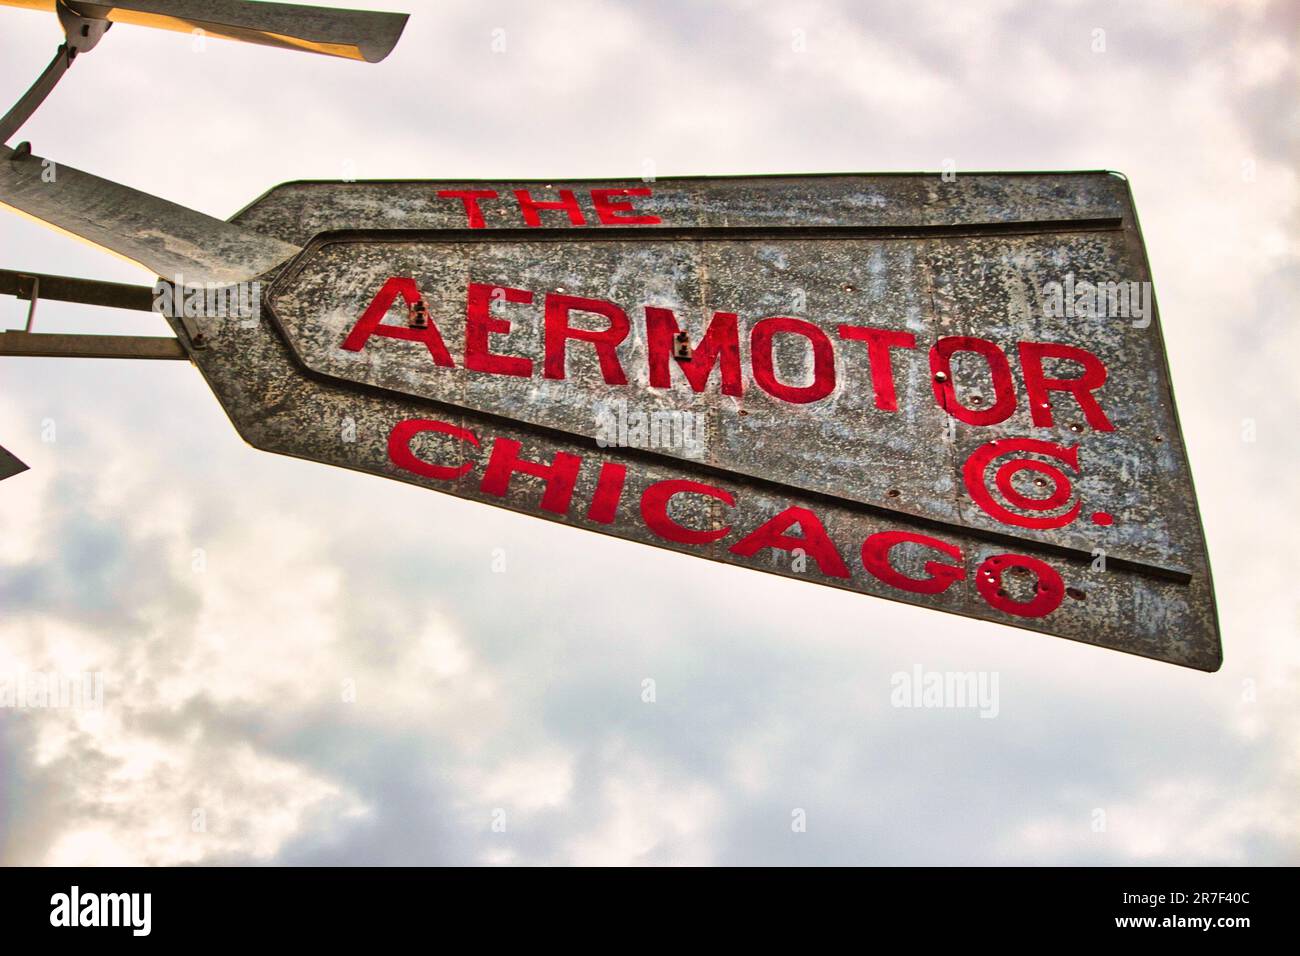 El Molino De Viento Aeromotor De Chicago Imagen editorial - Imagen de  eléctrico, viento: 214955530